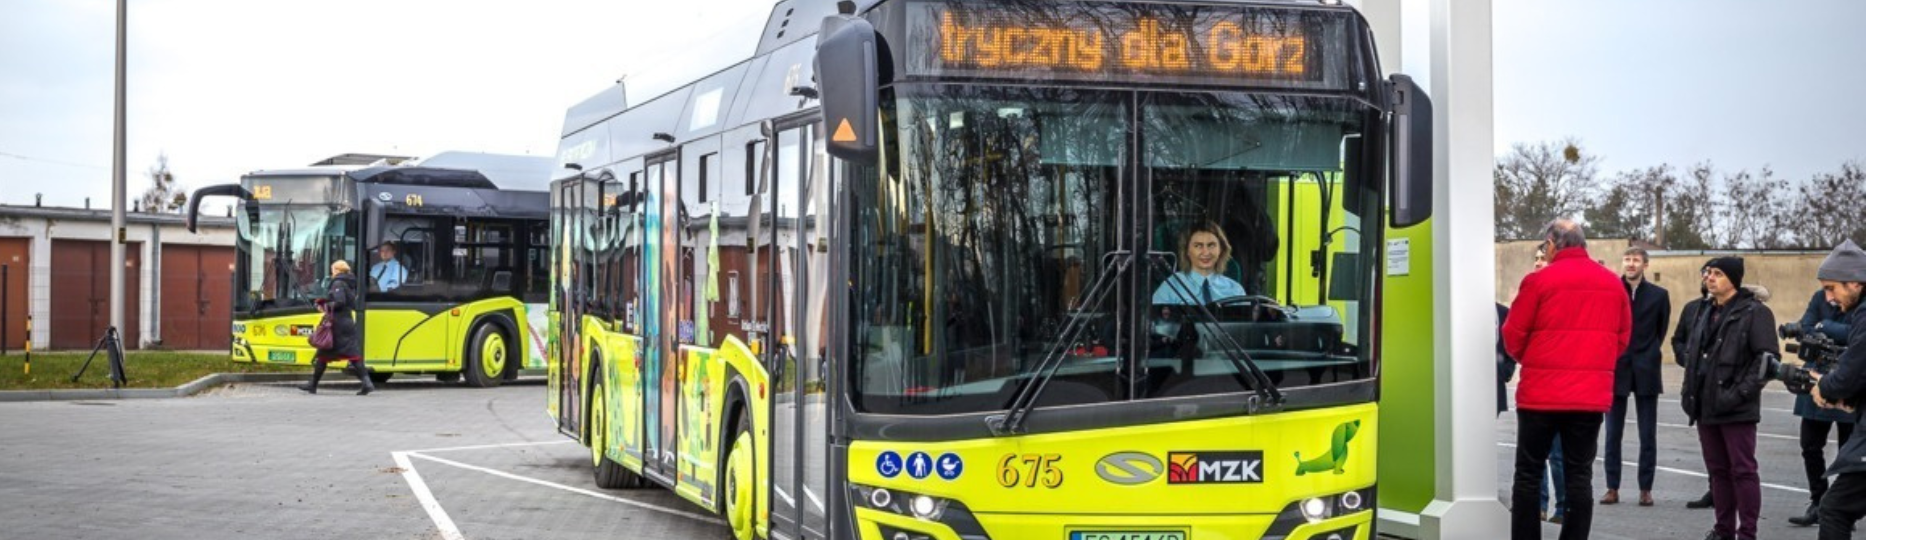 Pierwsze autobusy elektryczne już na ulicach Gorzowa Wielkopolskiego